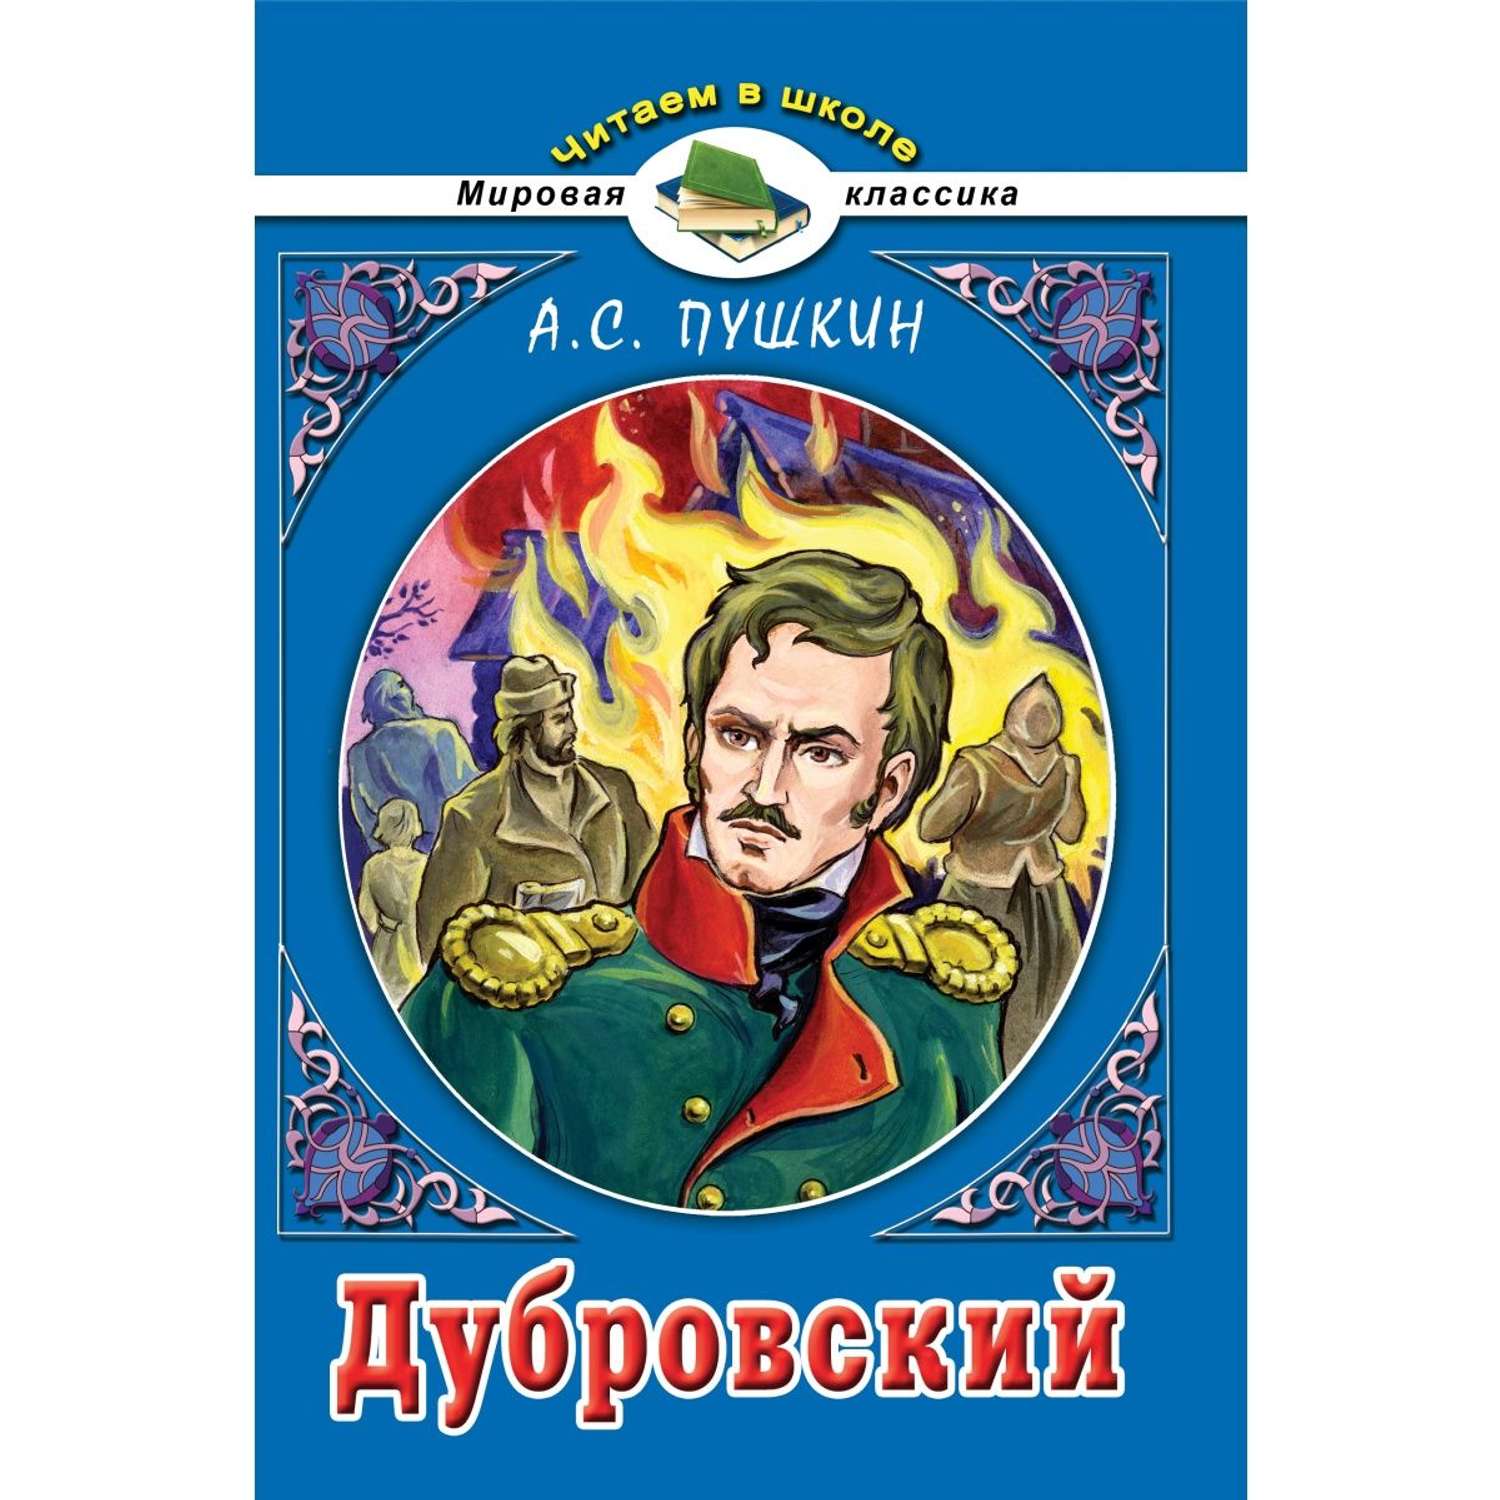 Книга Алтей для детей «Дубровский» и «Евгений Онегин» набор 2 шт. - фото 5